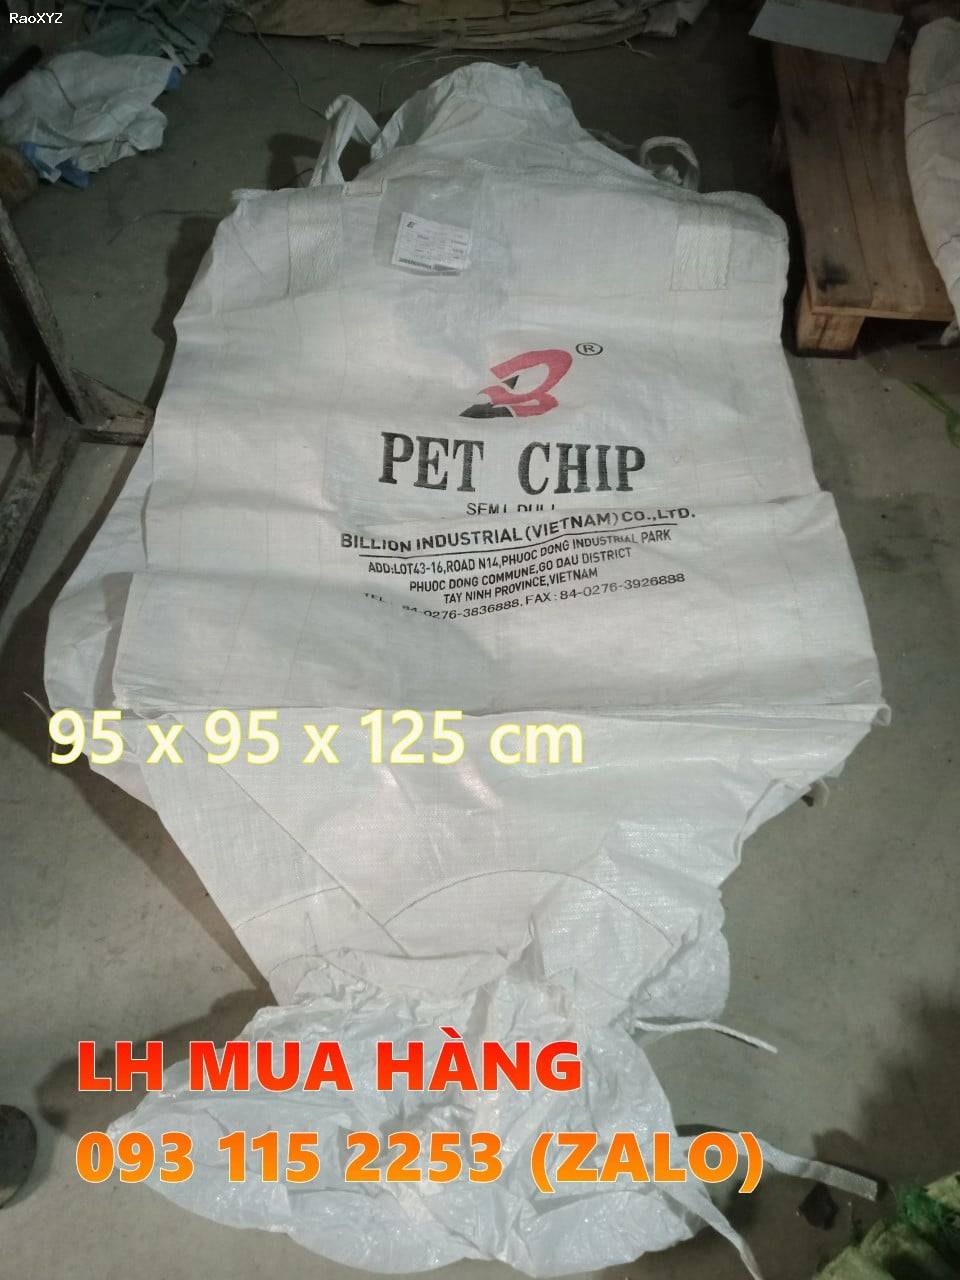 Bao jumbo 1 tấn là loại bao bì được sử dụng để đóng gói và vận chuyển các loại hàng hóa